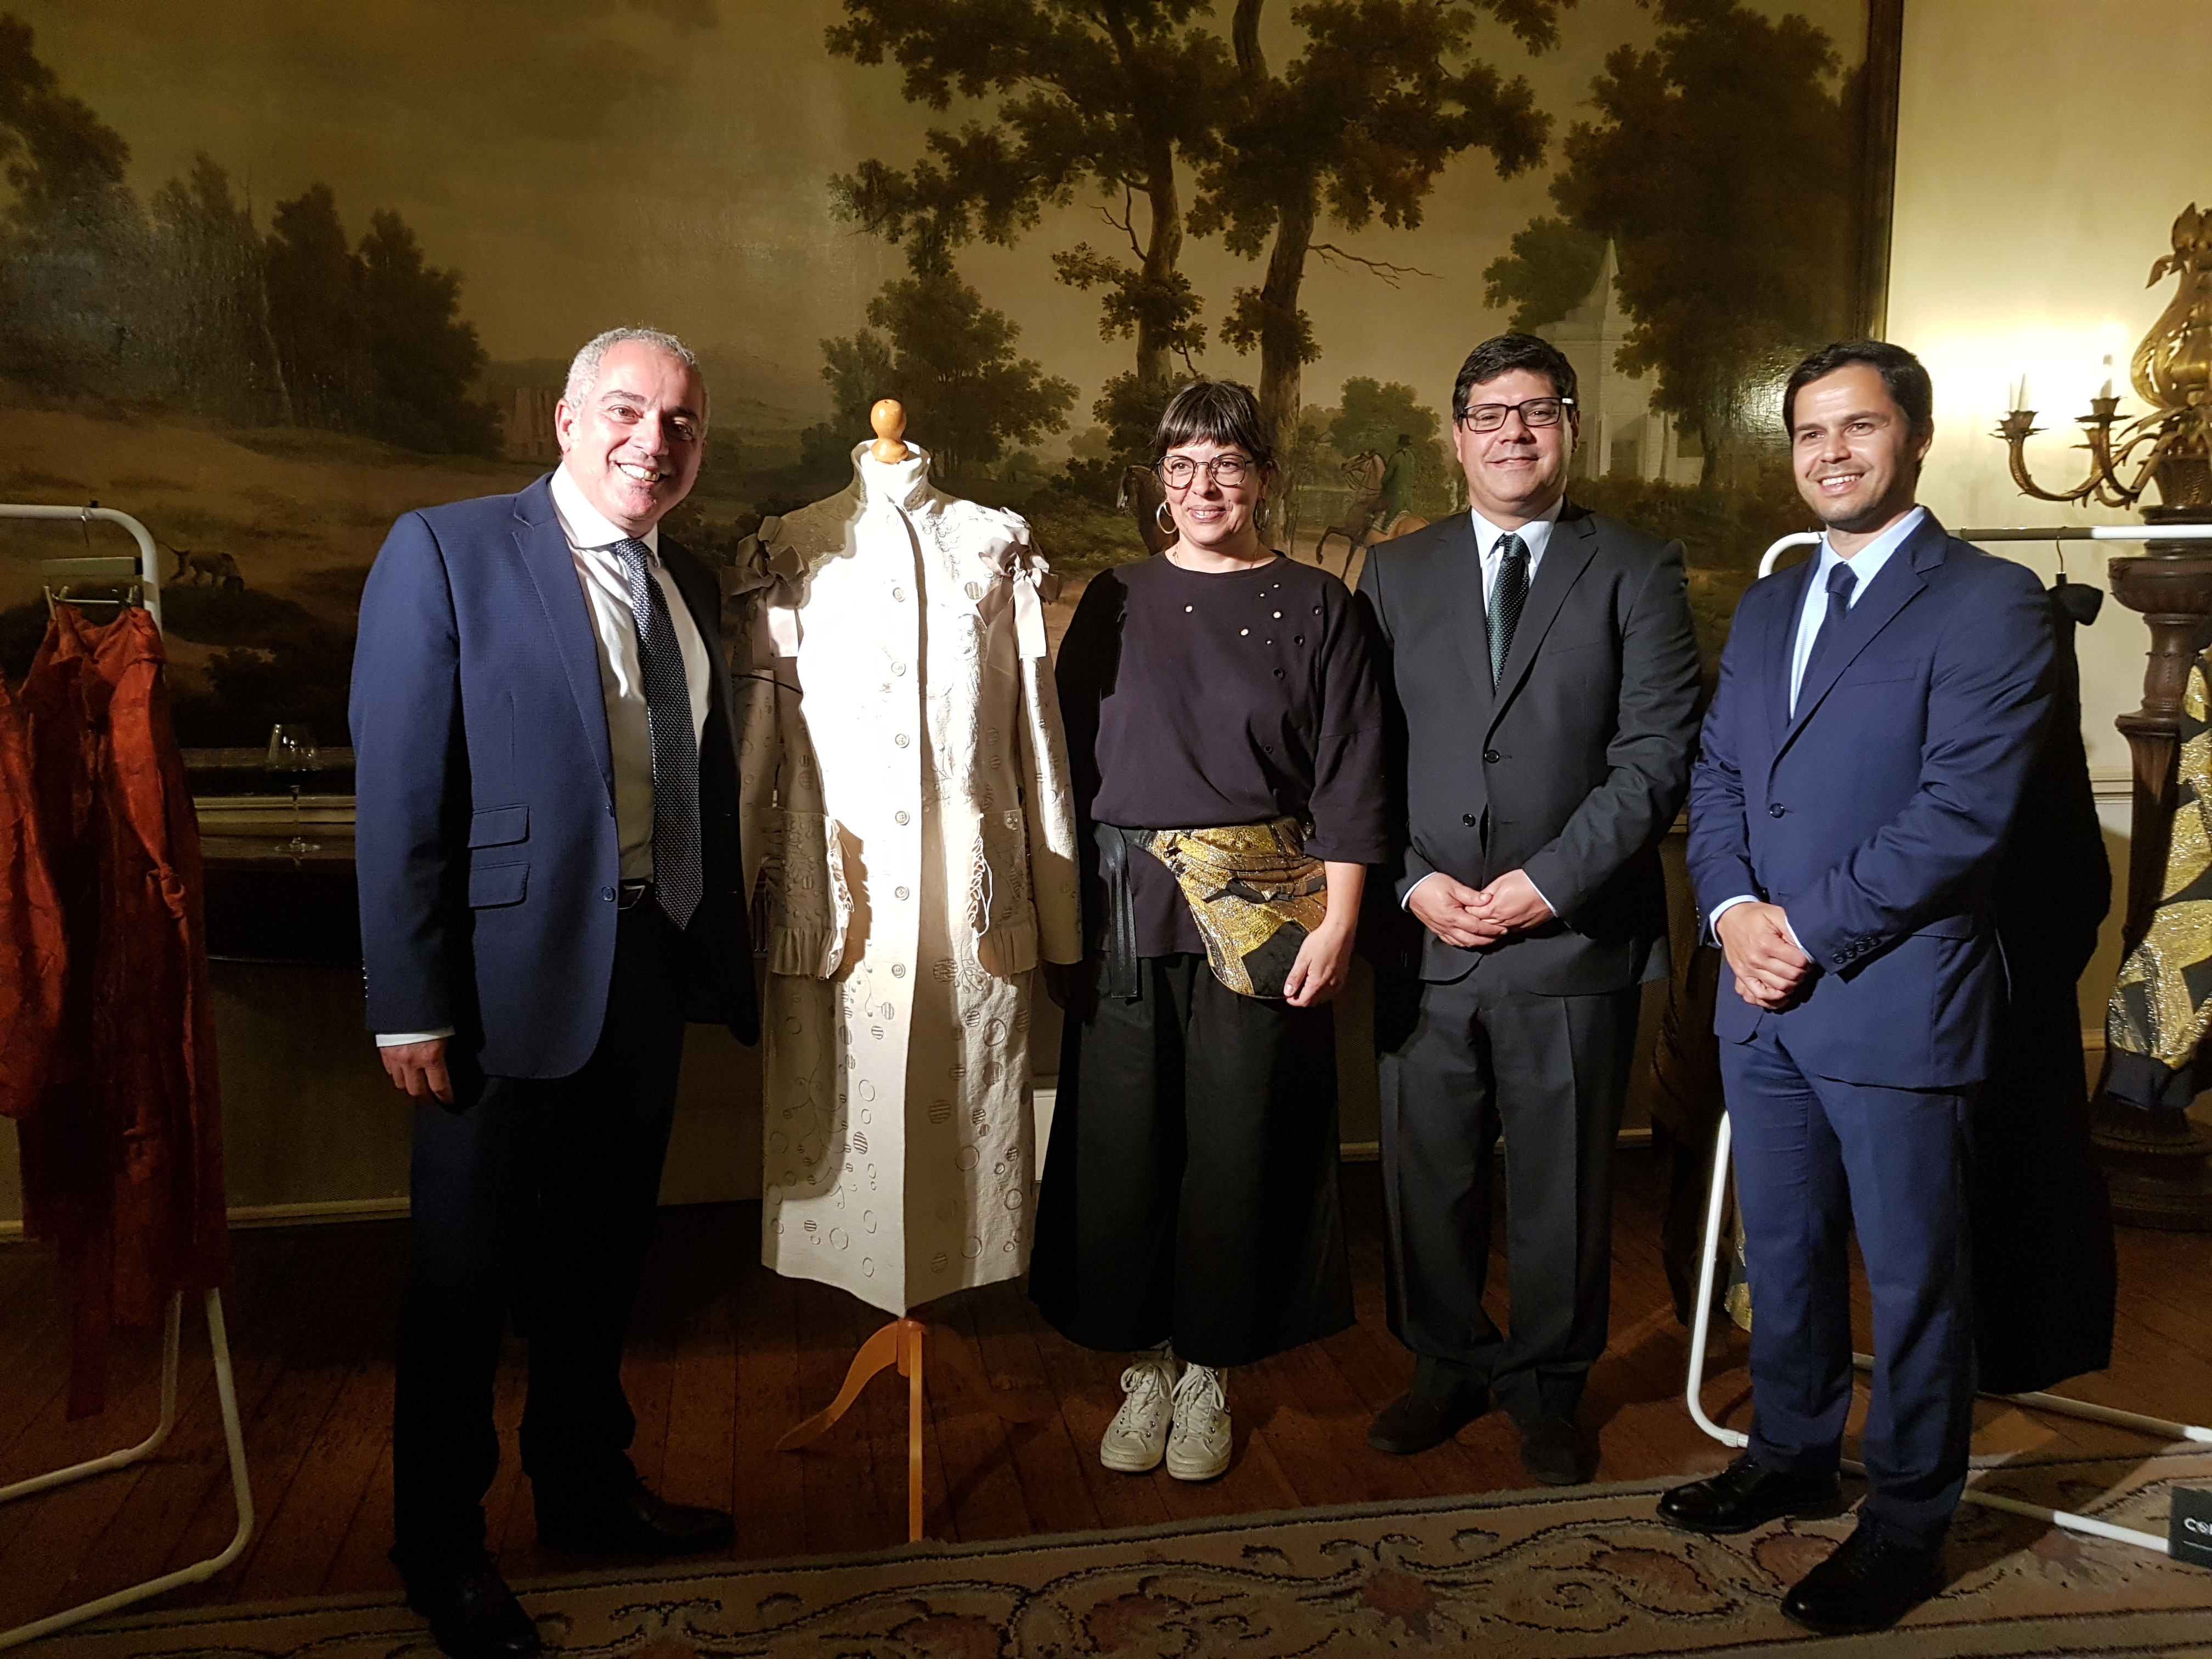 Alexandra Moura mostra casaco com Bordado de Castelo Branco na embaixada de Londres